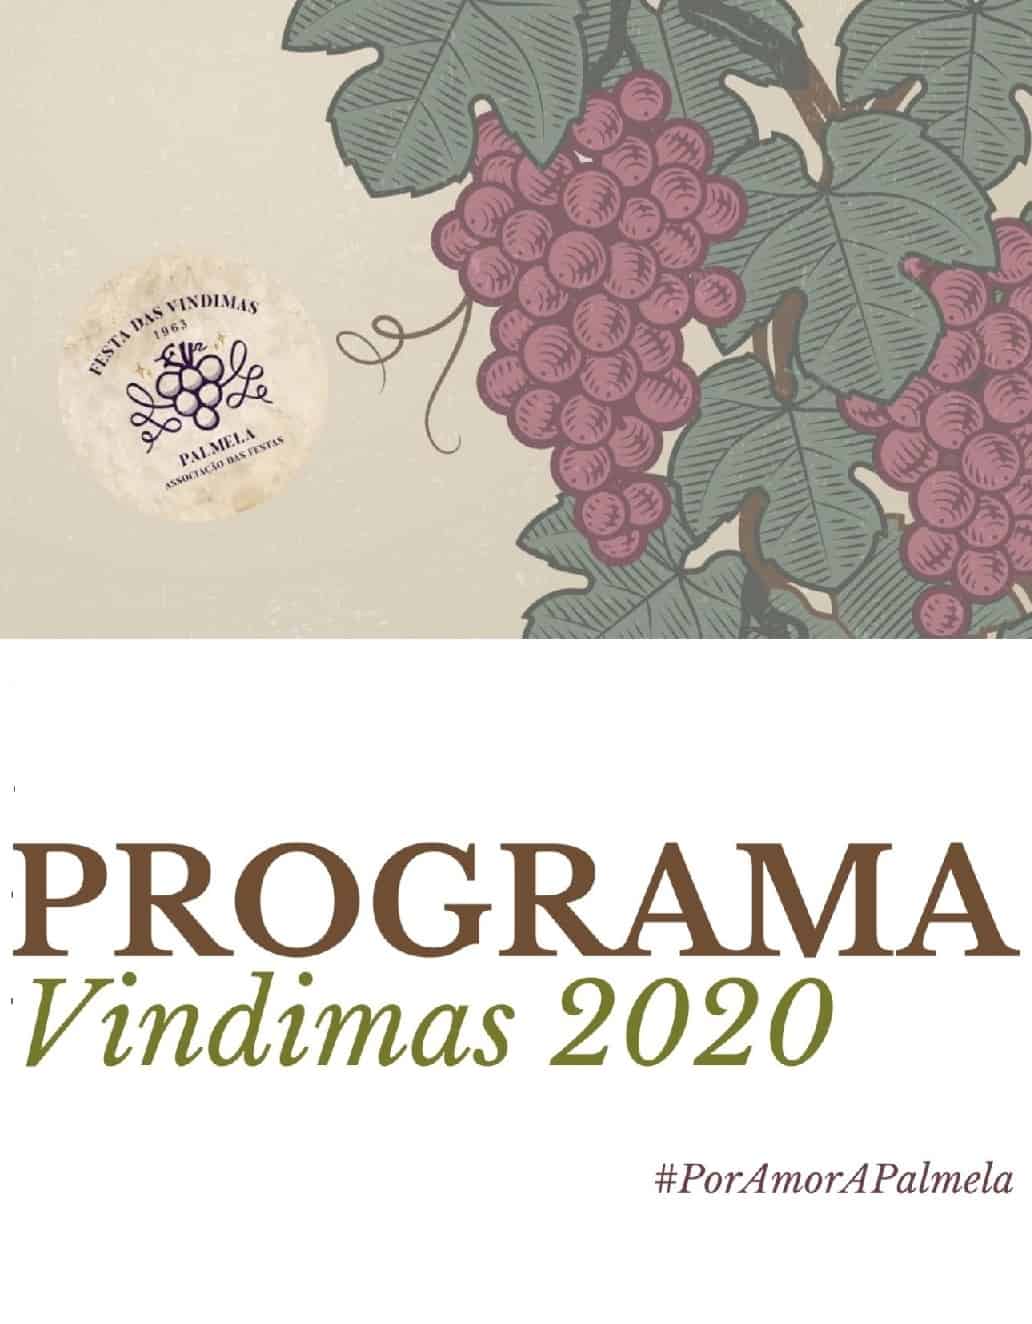 FESTA DAS VINDIMAS DE PALMELA 2020